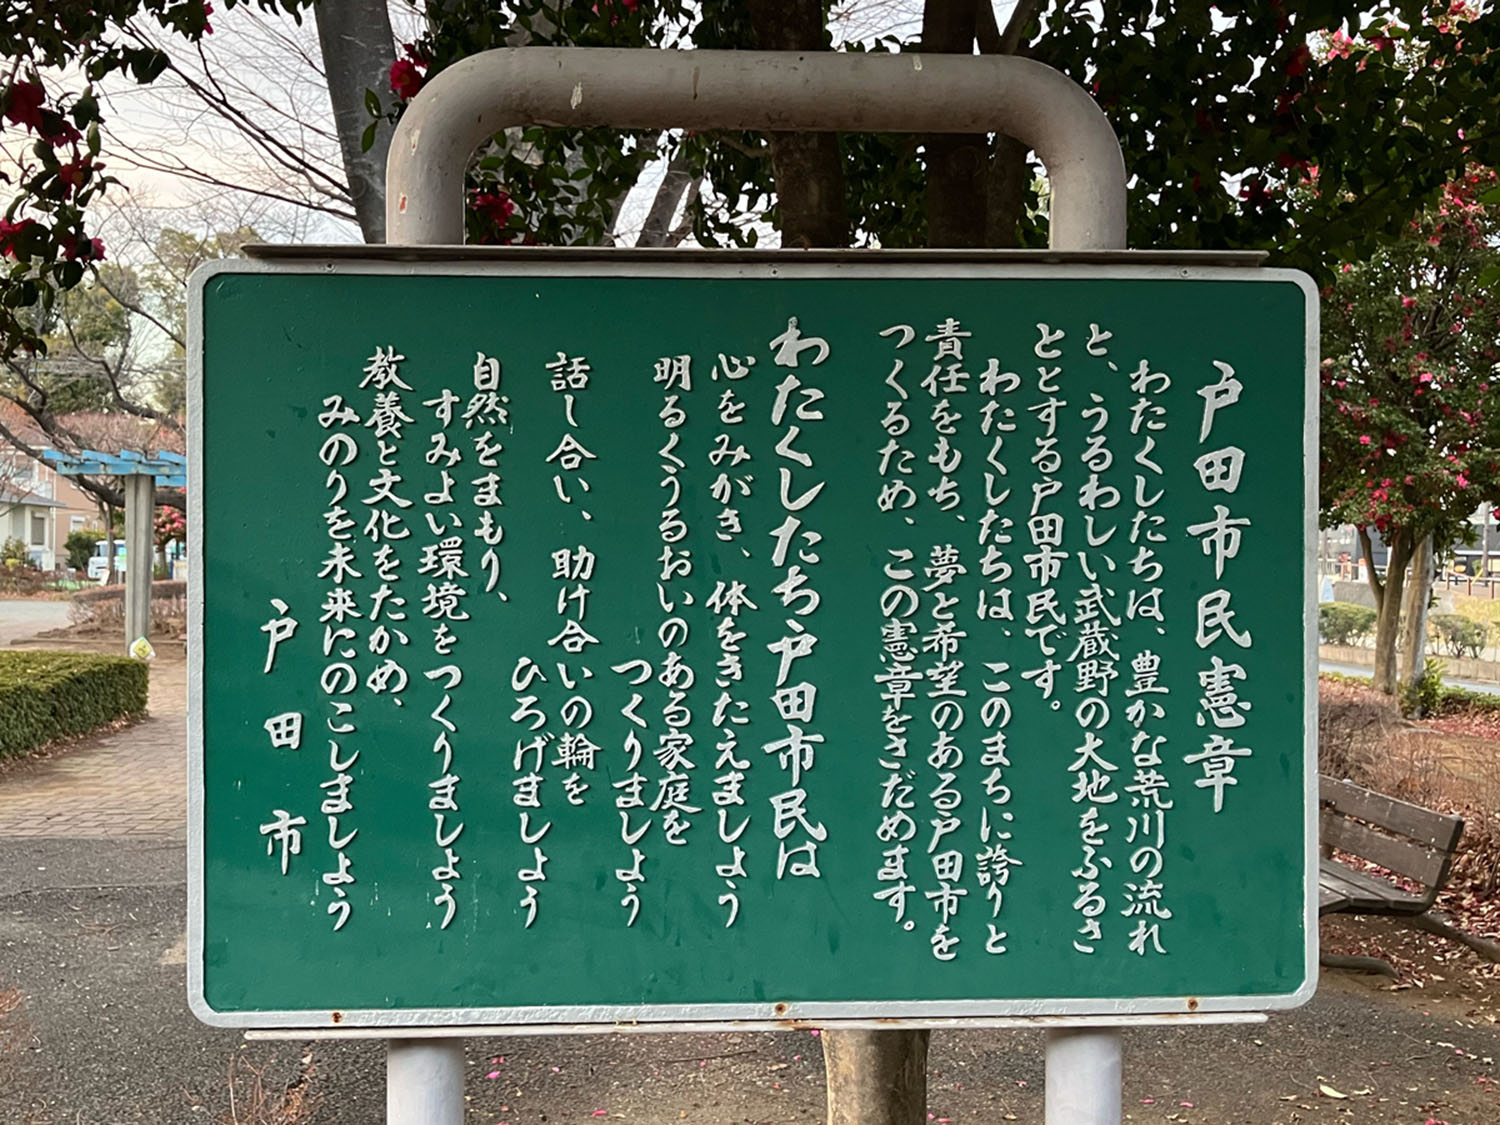 戸田市の子供たちは、この市民憲章とともに育つのだろう（谷口北公園）。